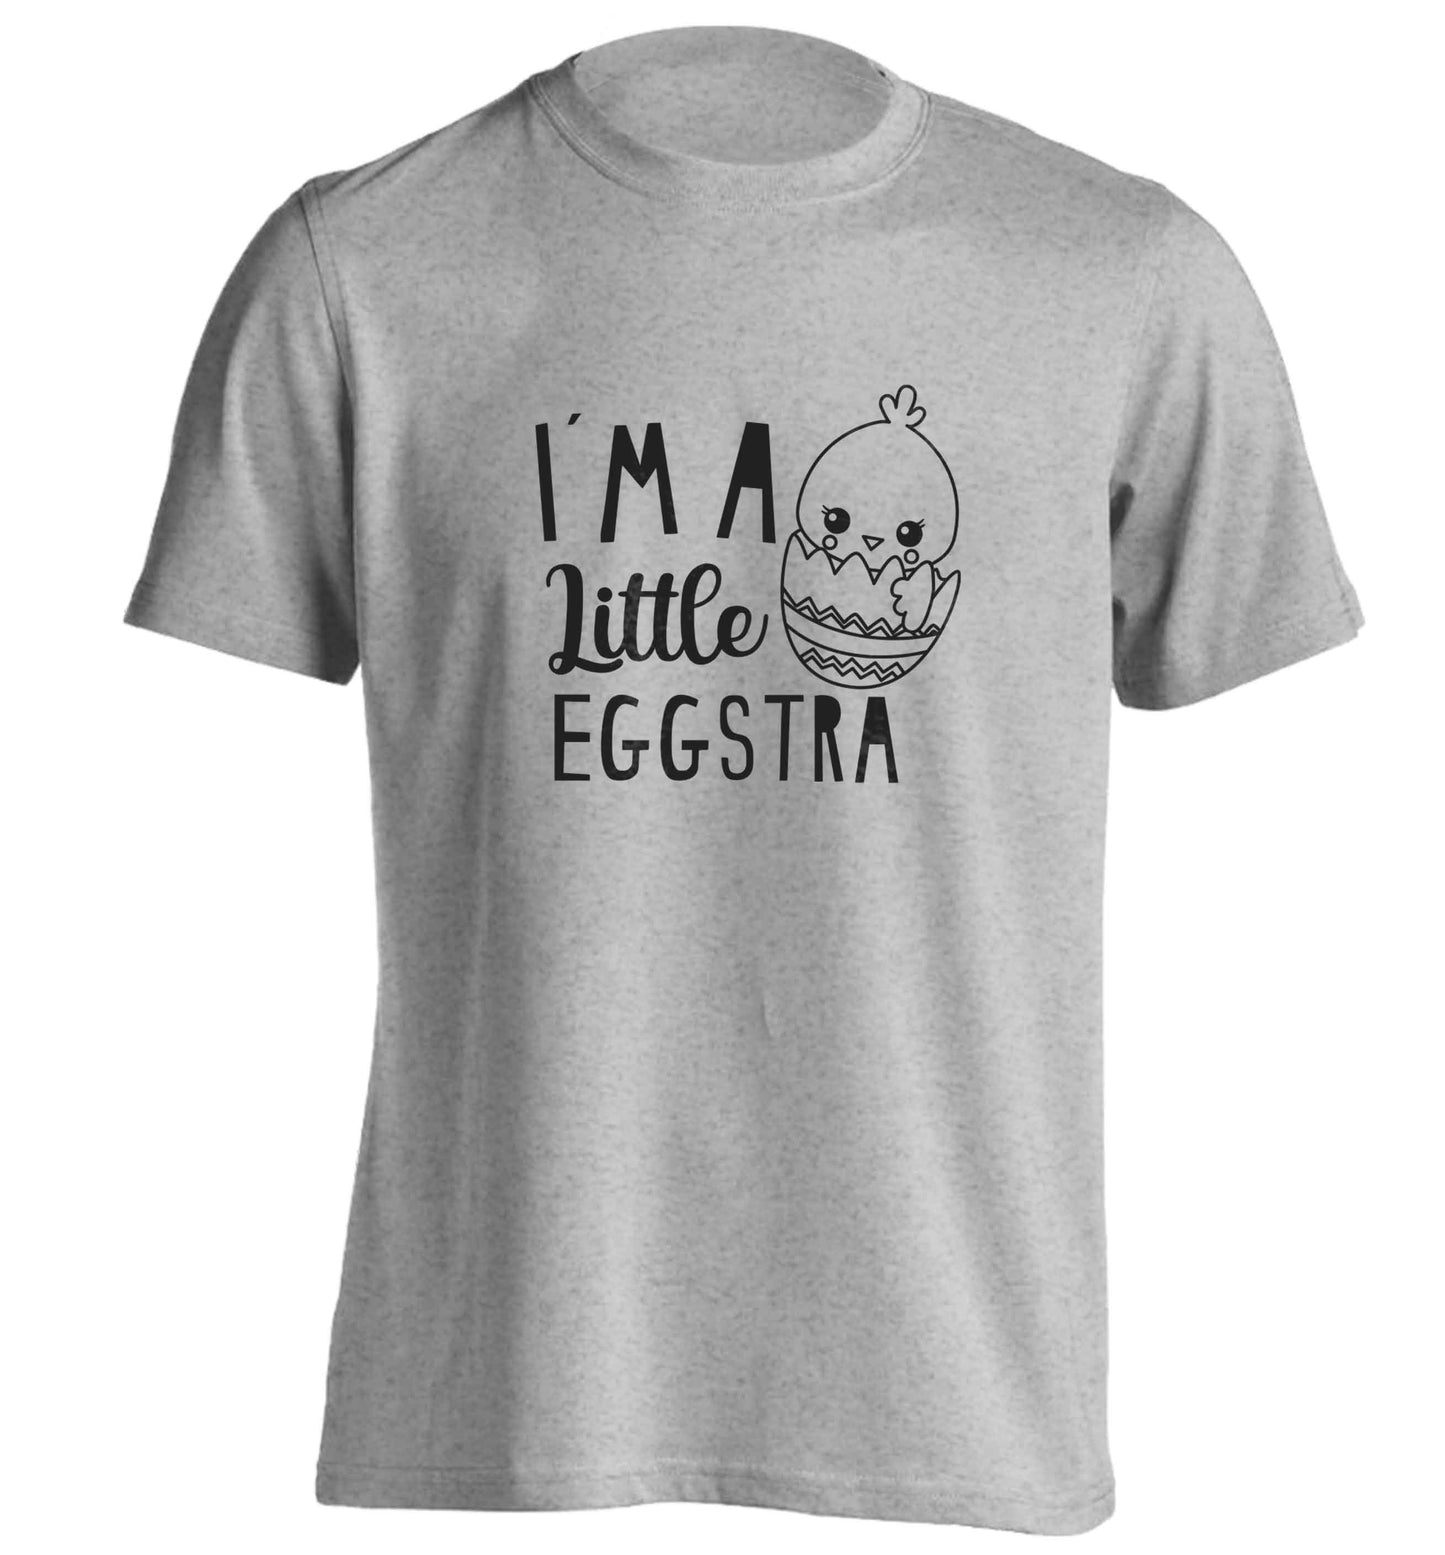 I'm a little eggstra adults unisex grey Tshirt 2XL